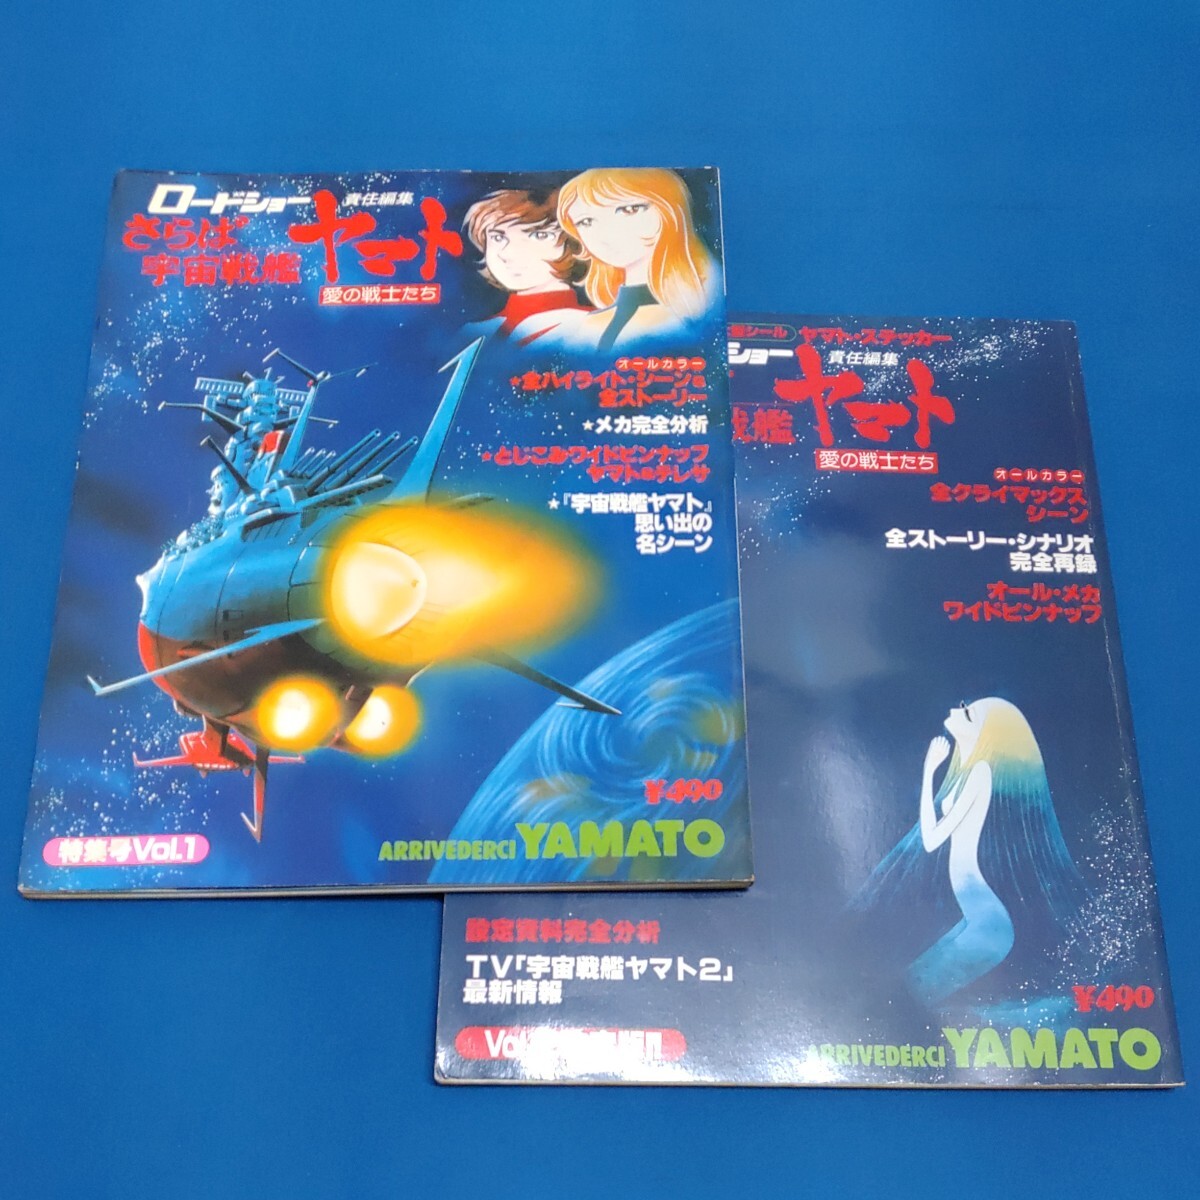 ロードショー責任編集 さらば宇宙戦艦ヤマト愛の戦士たち 特集号Vol.1 Vol.2決定版_画像1